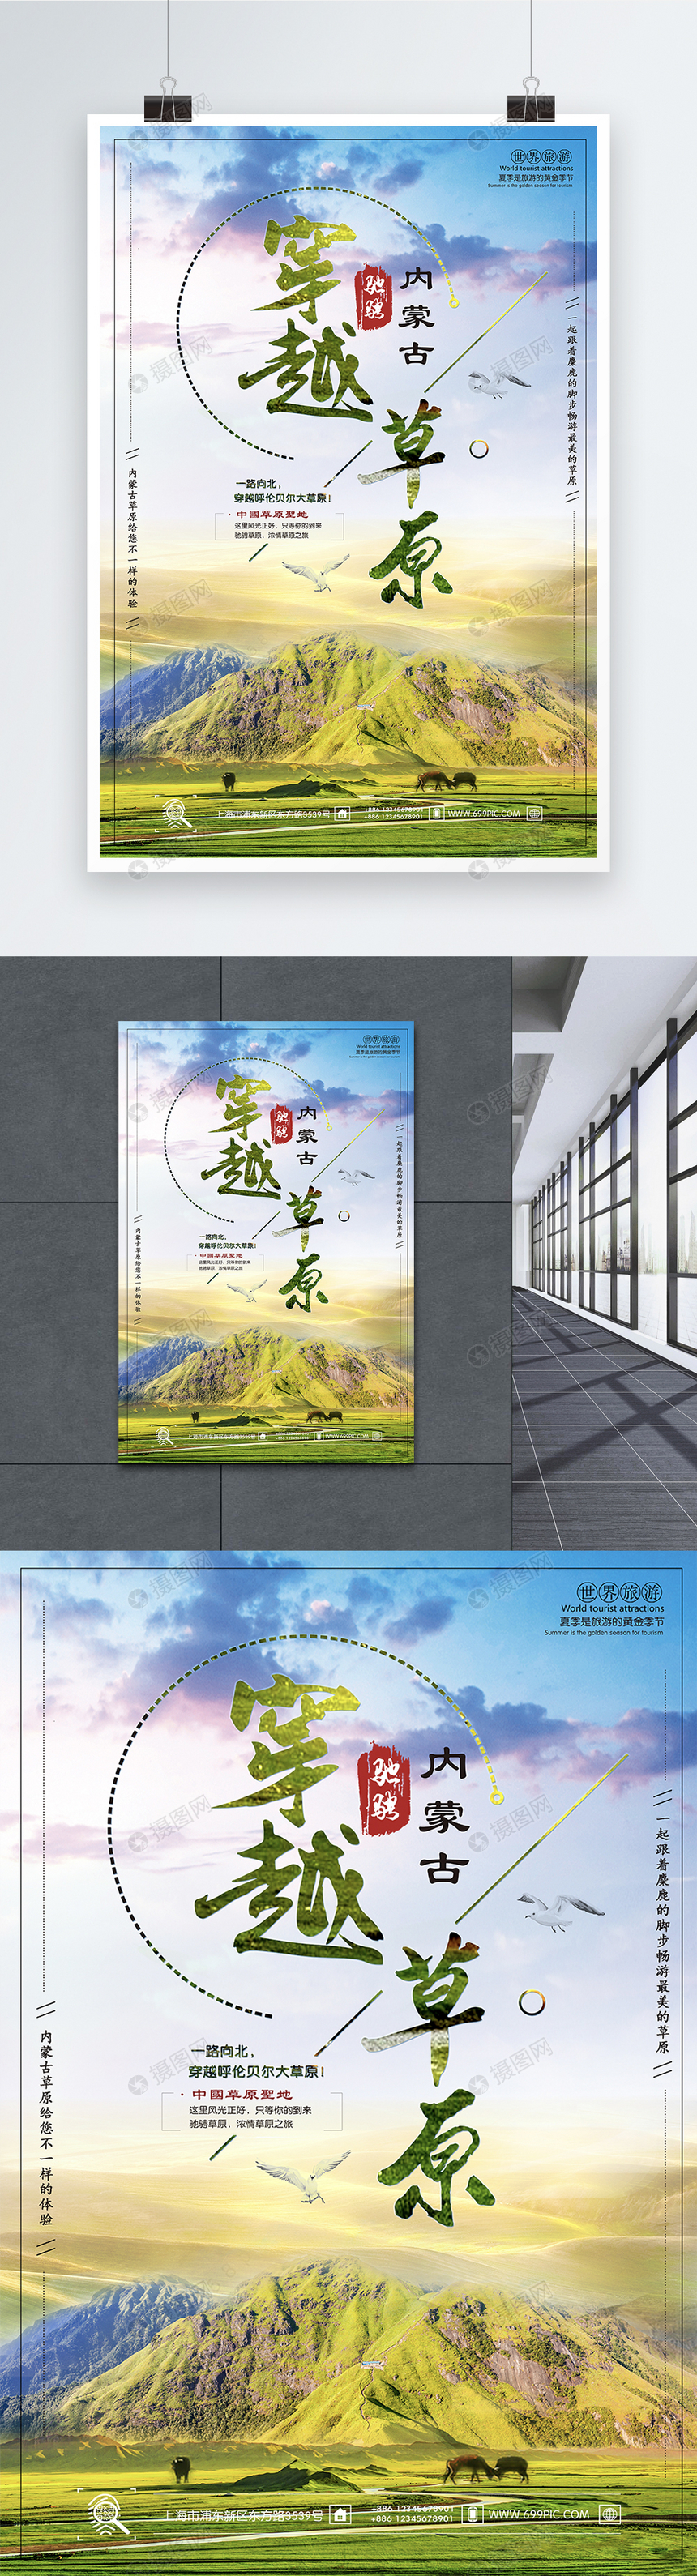 内蒙古草原旅游海报图片